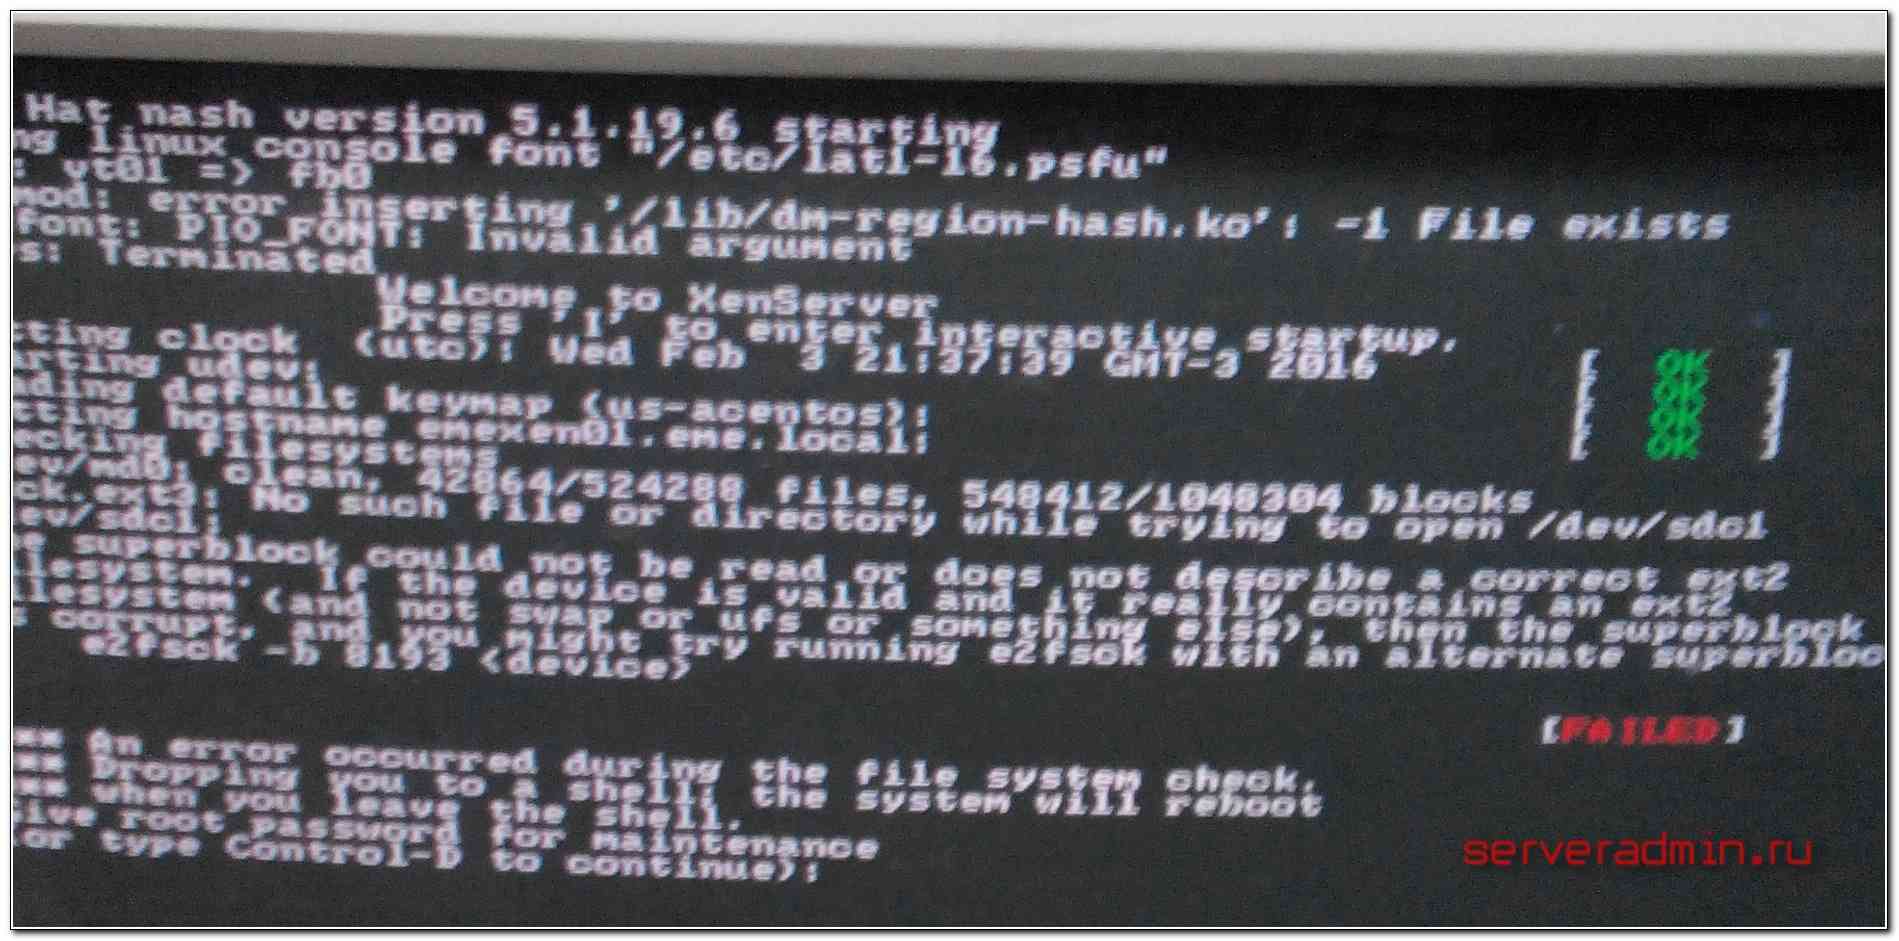 Устранение проблем с запуском linux vm из-за ошибок файловой системы